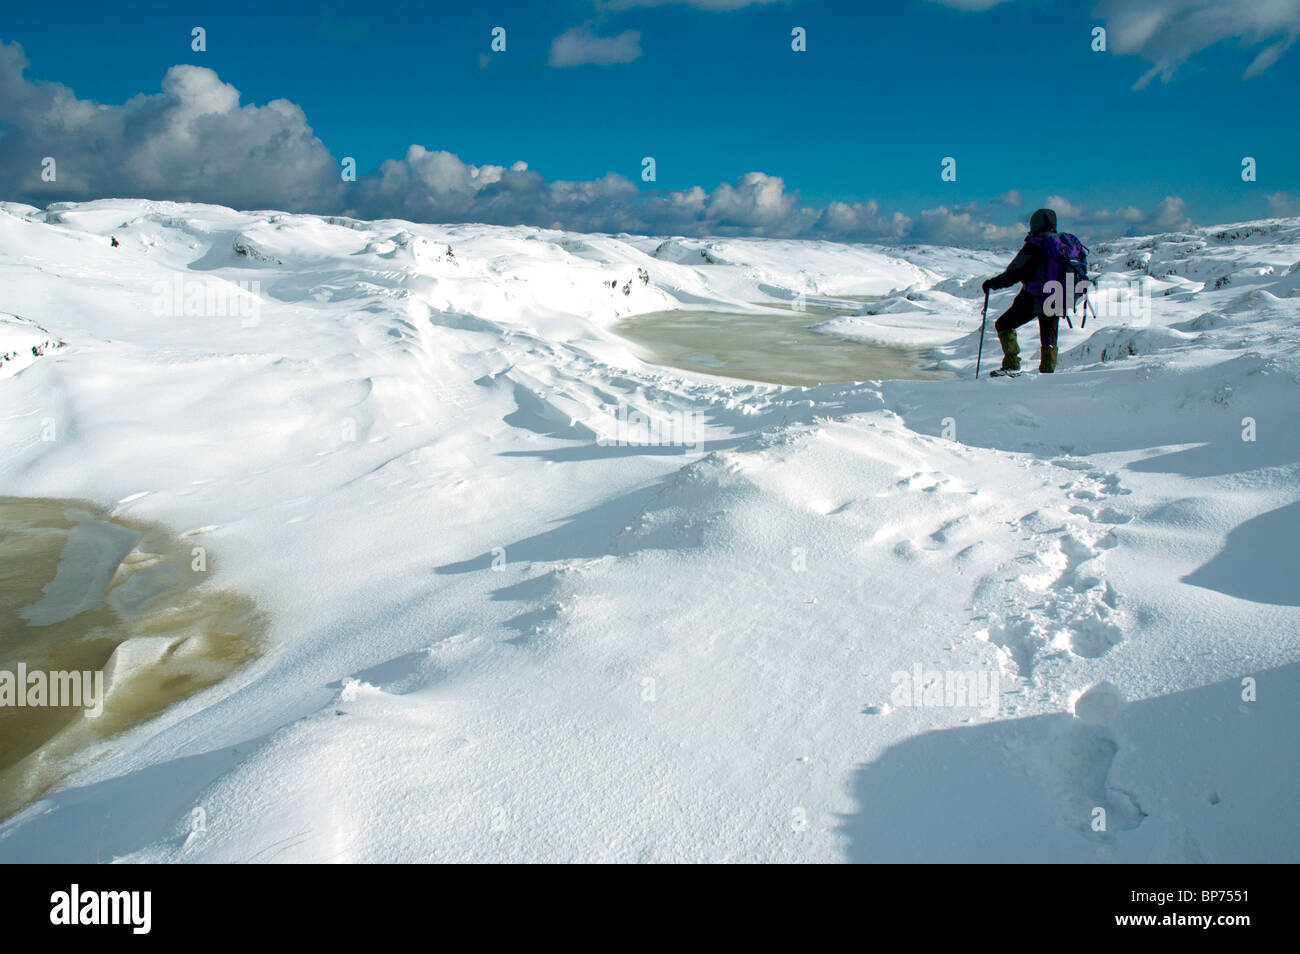 A walker on the frozen Kinder Scout plateau in winter, near Hayfield, Peak District, Derbyshire, England, UK Stock Photo